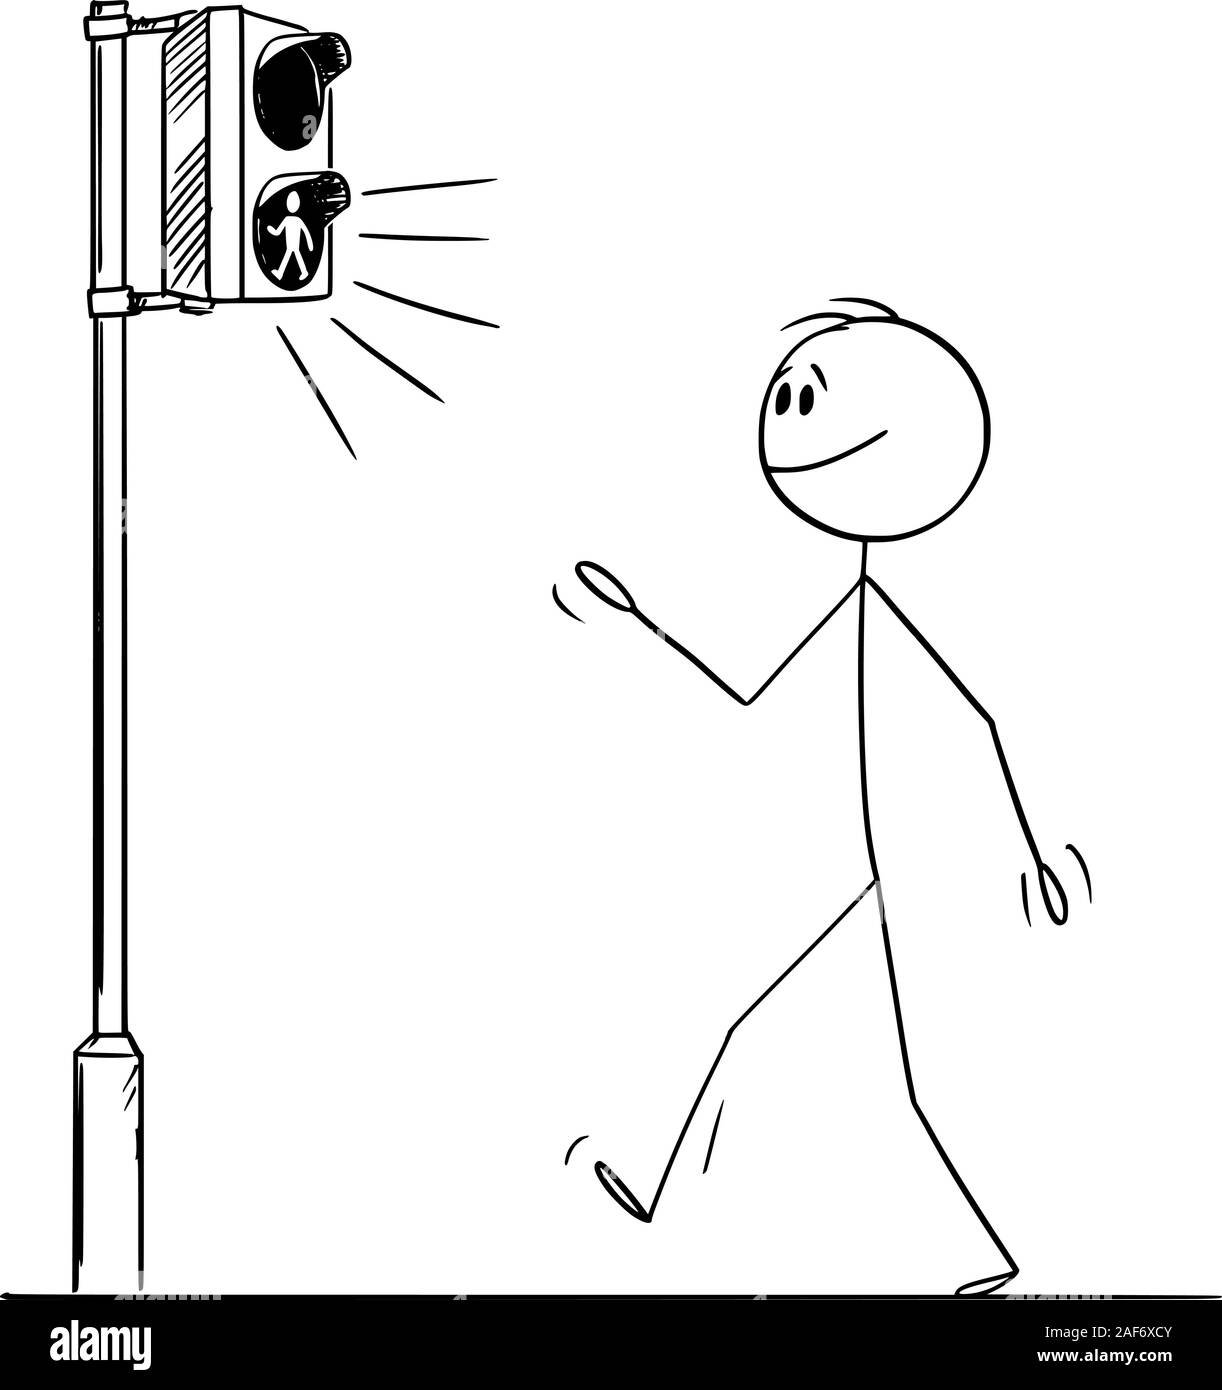 Vector cartoon stick figura disegno illustrazione concettuale dell'uomo o passeggiate pedonali sull' attraversamento perché la luce verde sul traffico stradale è accesa. Illustrazione Vettoriale